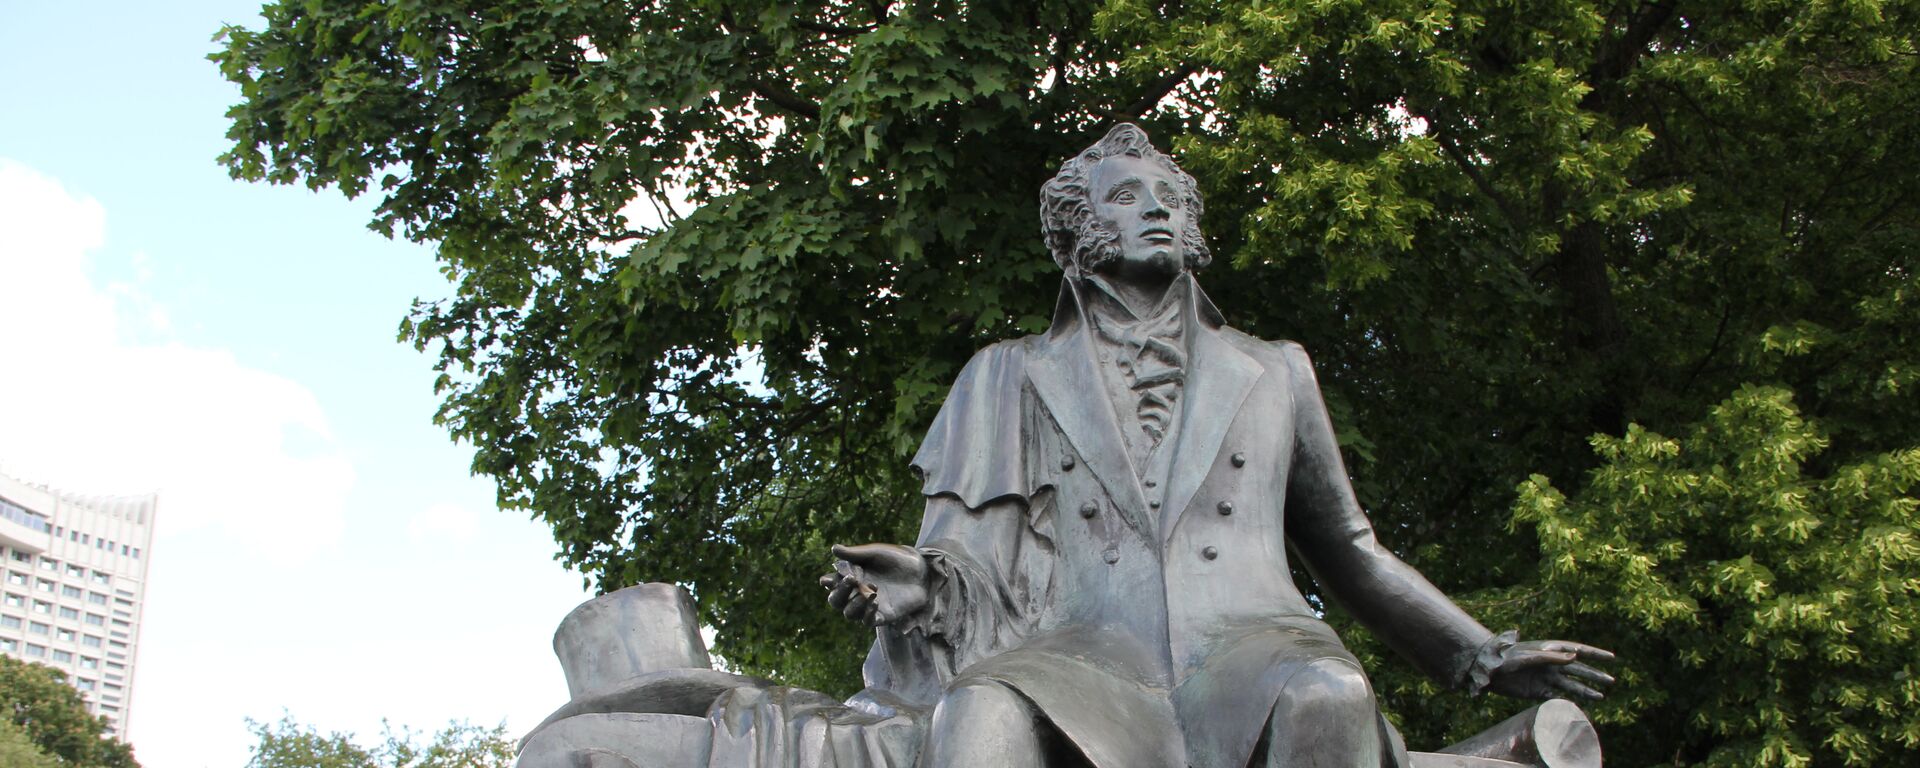 Памятник А. С. Пушкину в Минске - Sputnik Беларусь, 1920, 06.06.2020